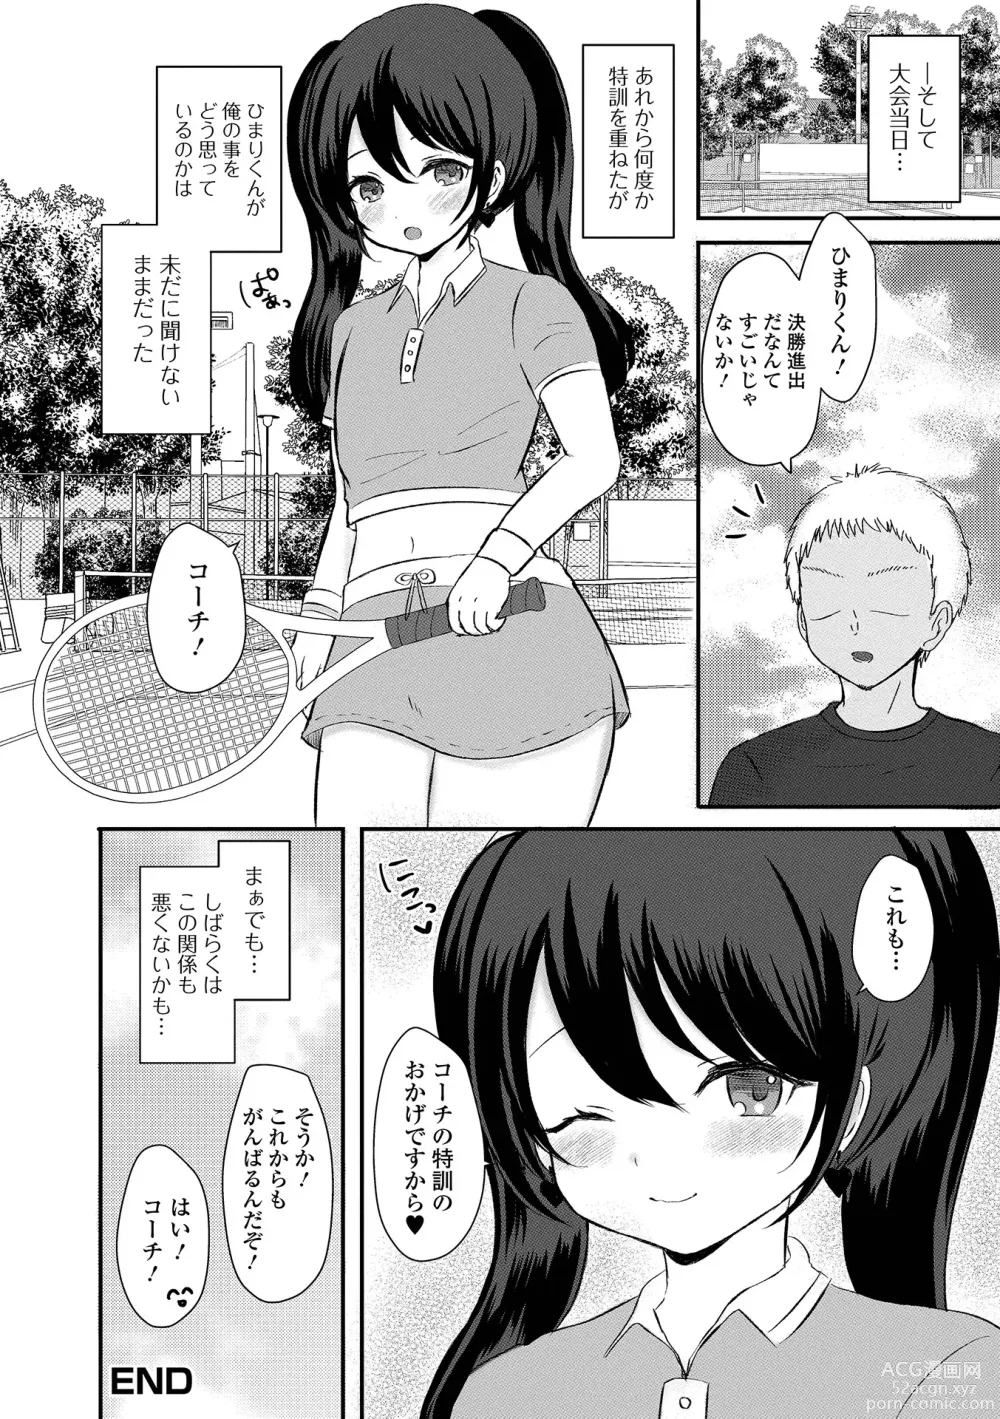 Page 100 of manga Gekkan Web Otoko no Ko-llection! S Vol. 92